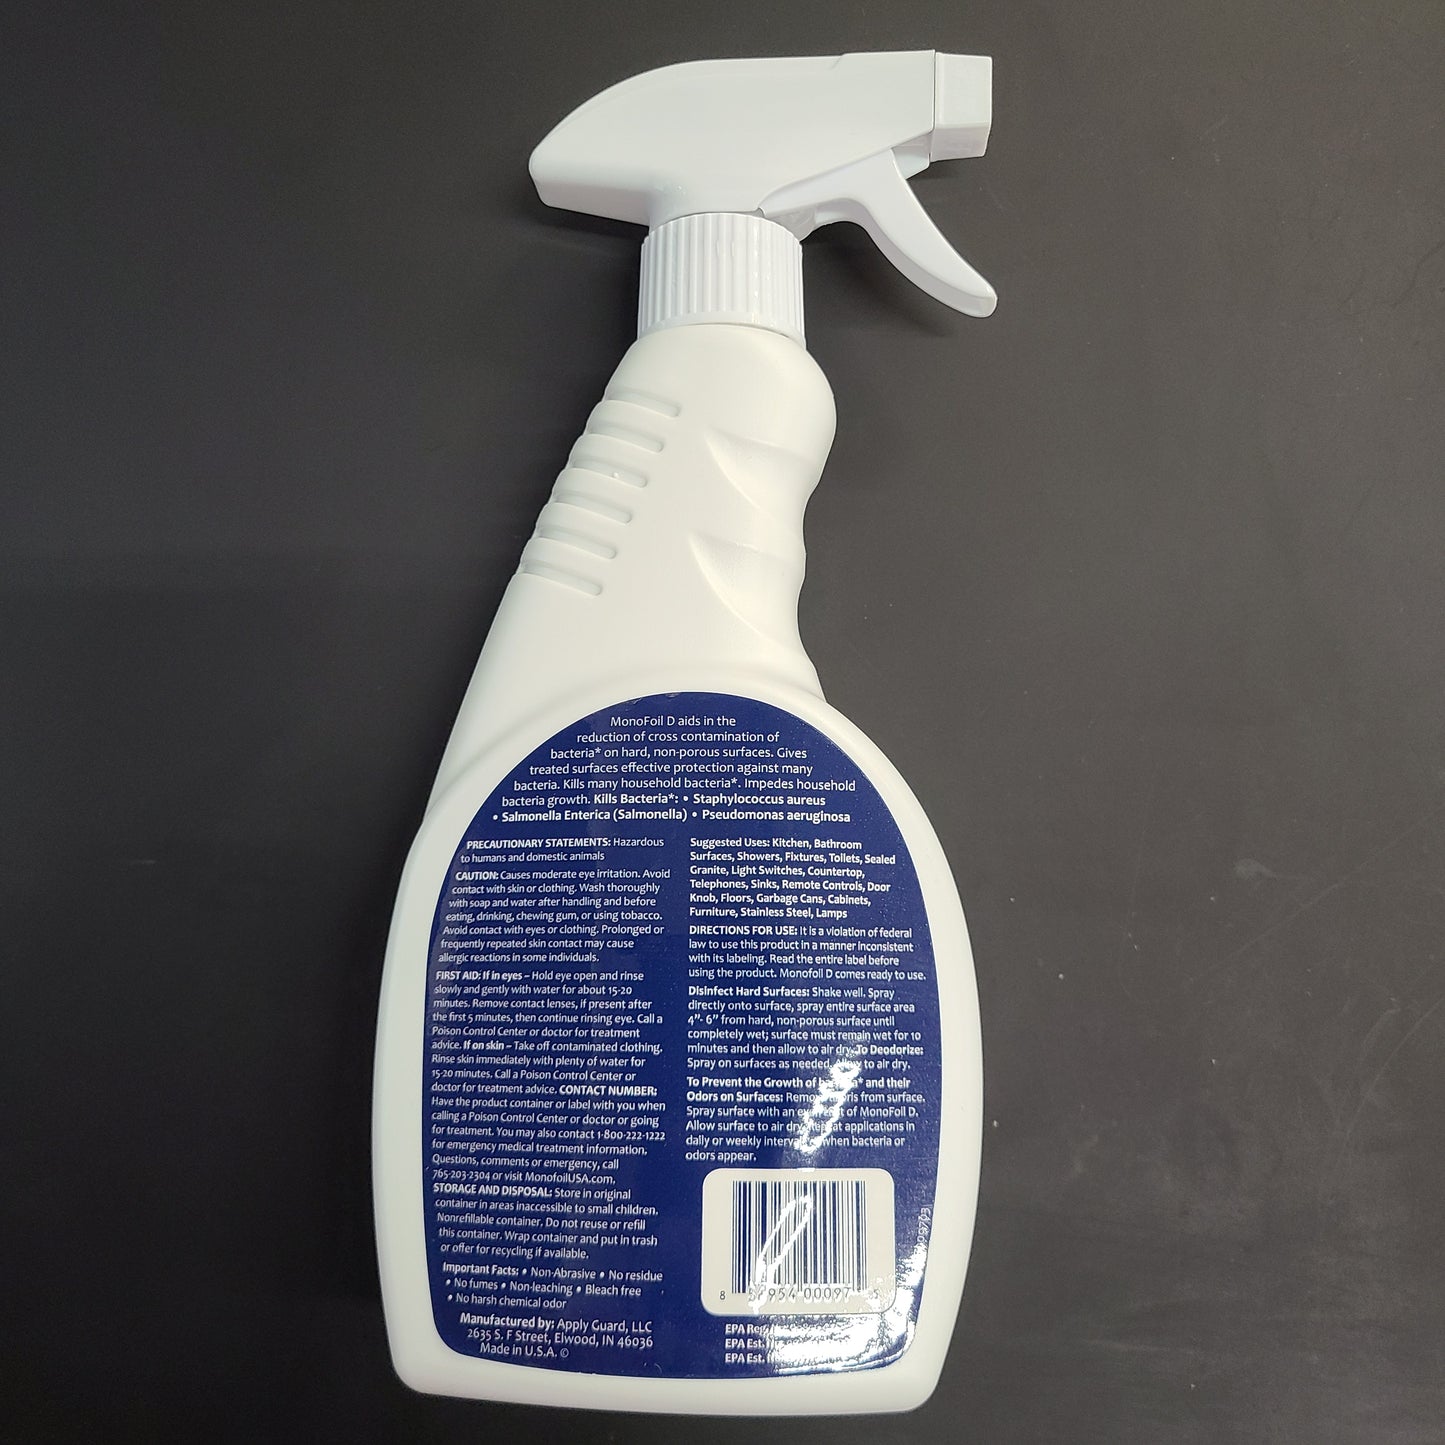 MonoFoil D (16 Fl. Oz.) Spray Bottle Disinfectant Shield